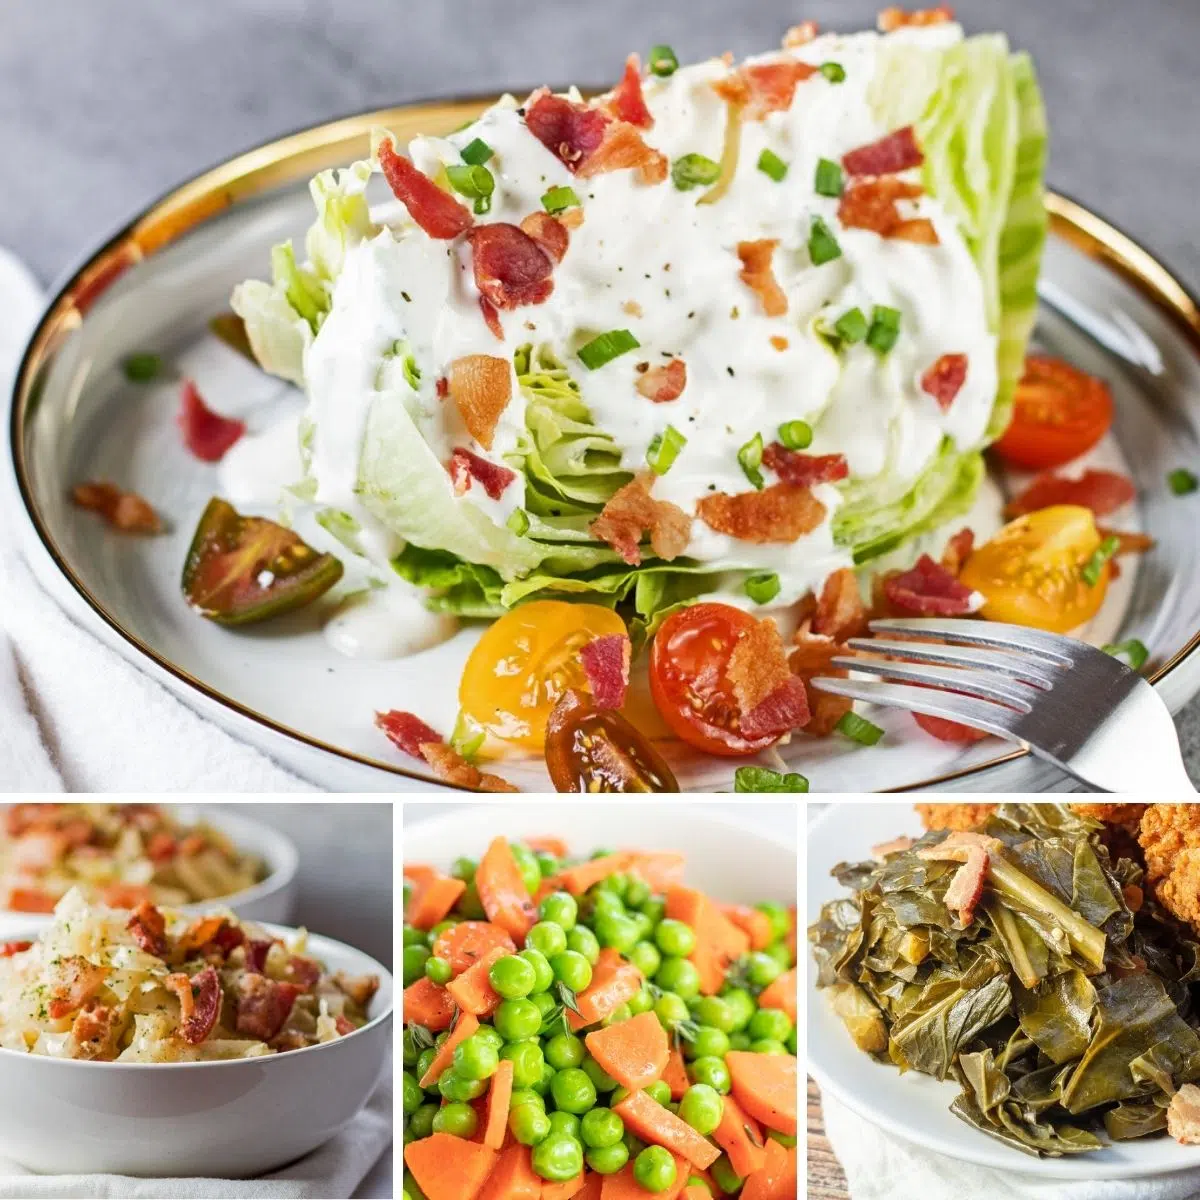 Die besten Gemüsebeilagen, die zu jeder Mahlzeit serviert werden können, wie in diesen 4 vorgestellten Rezepten in einem Collagenbild gezeigt.